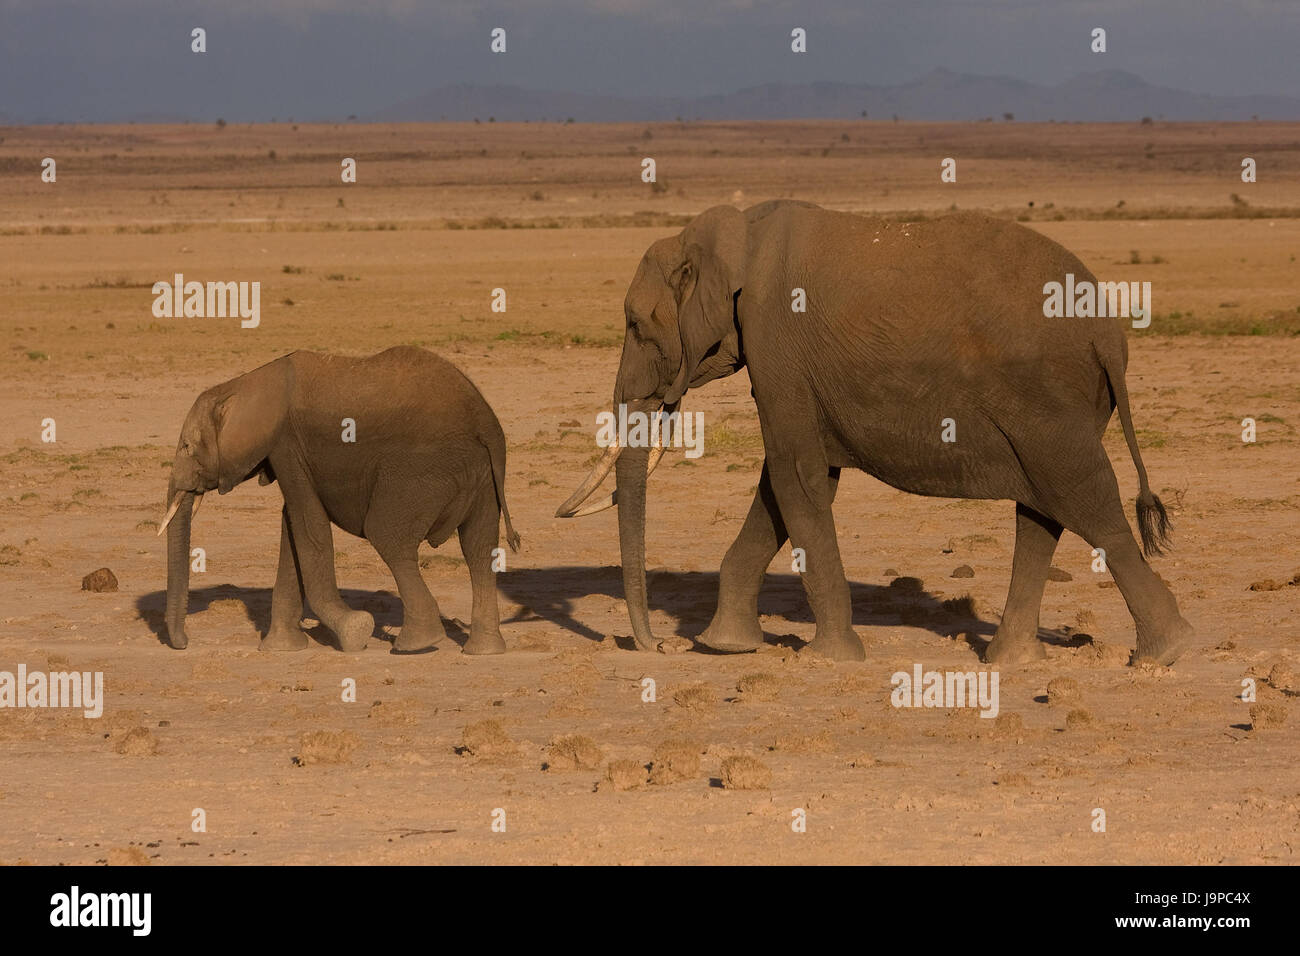 africa, elephant, kenya, wildlife, safari, holiday, vacation, holidays, Stock Photo